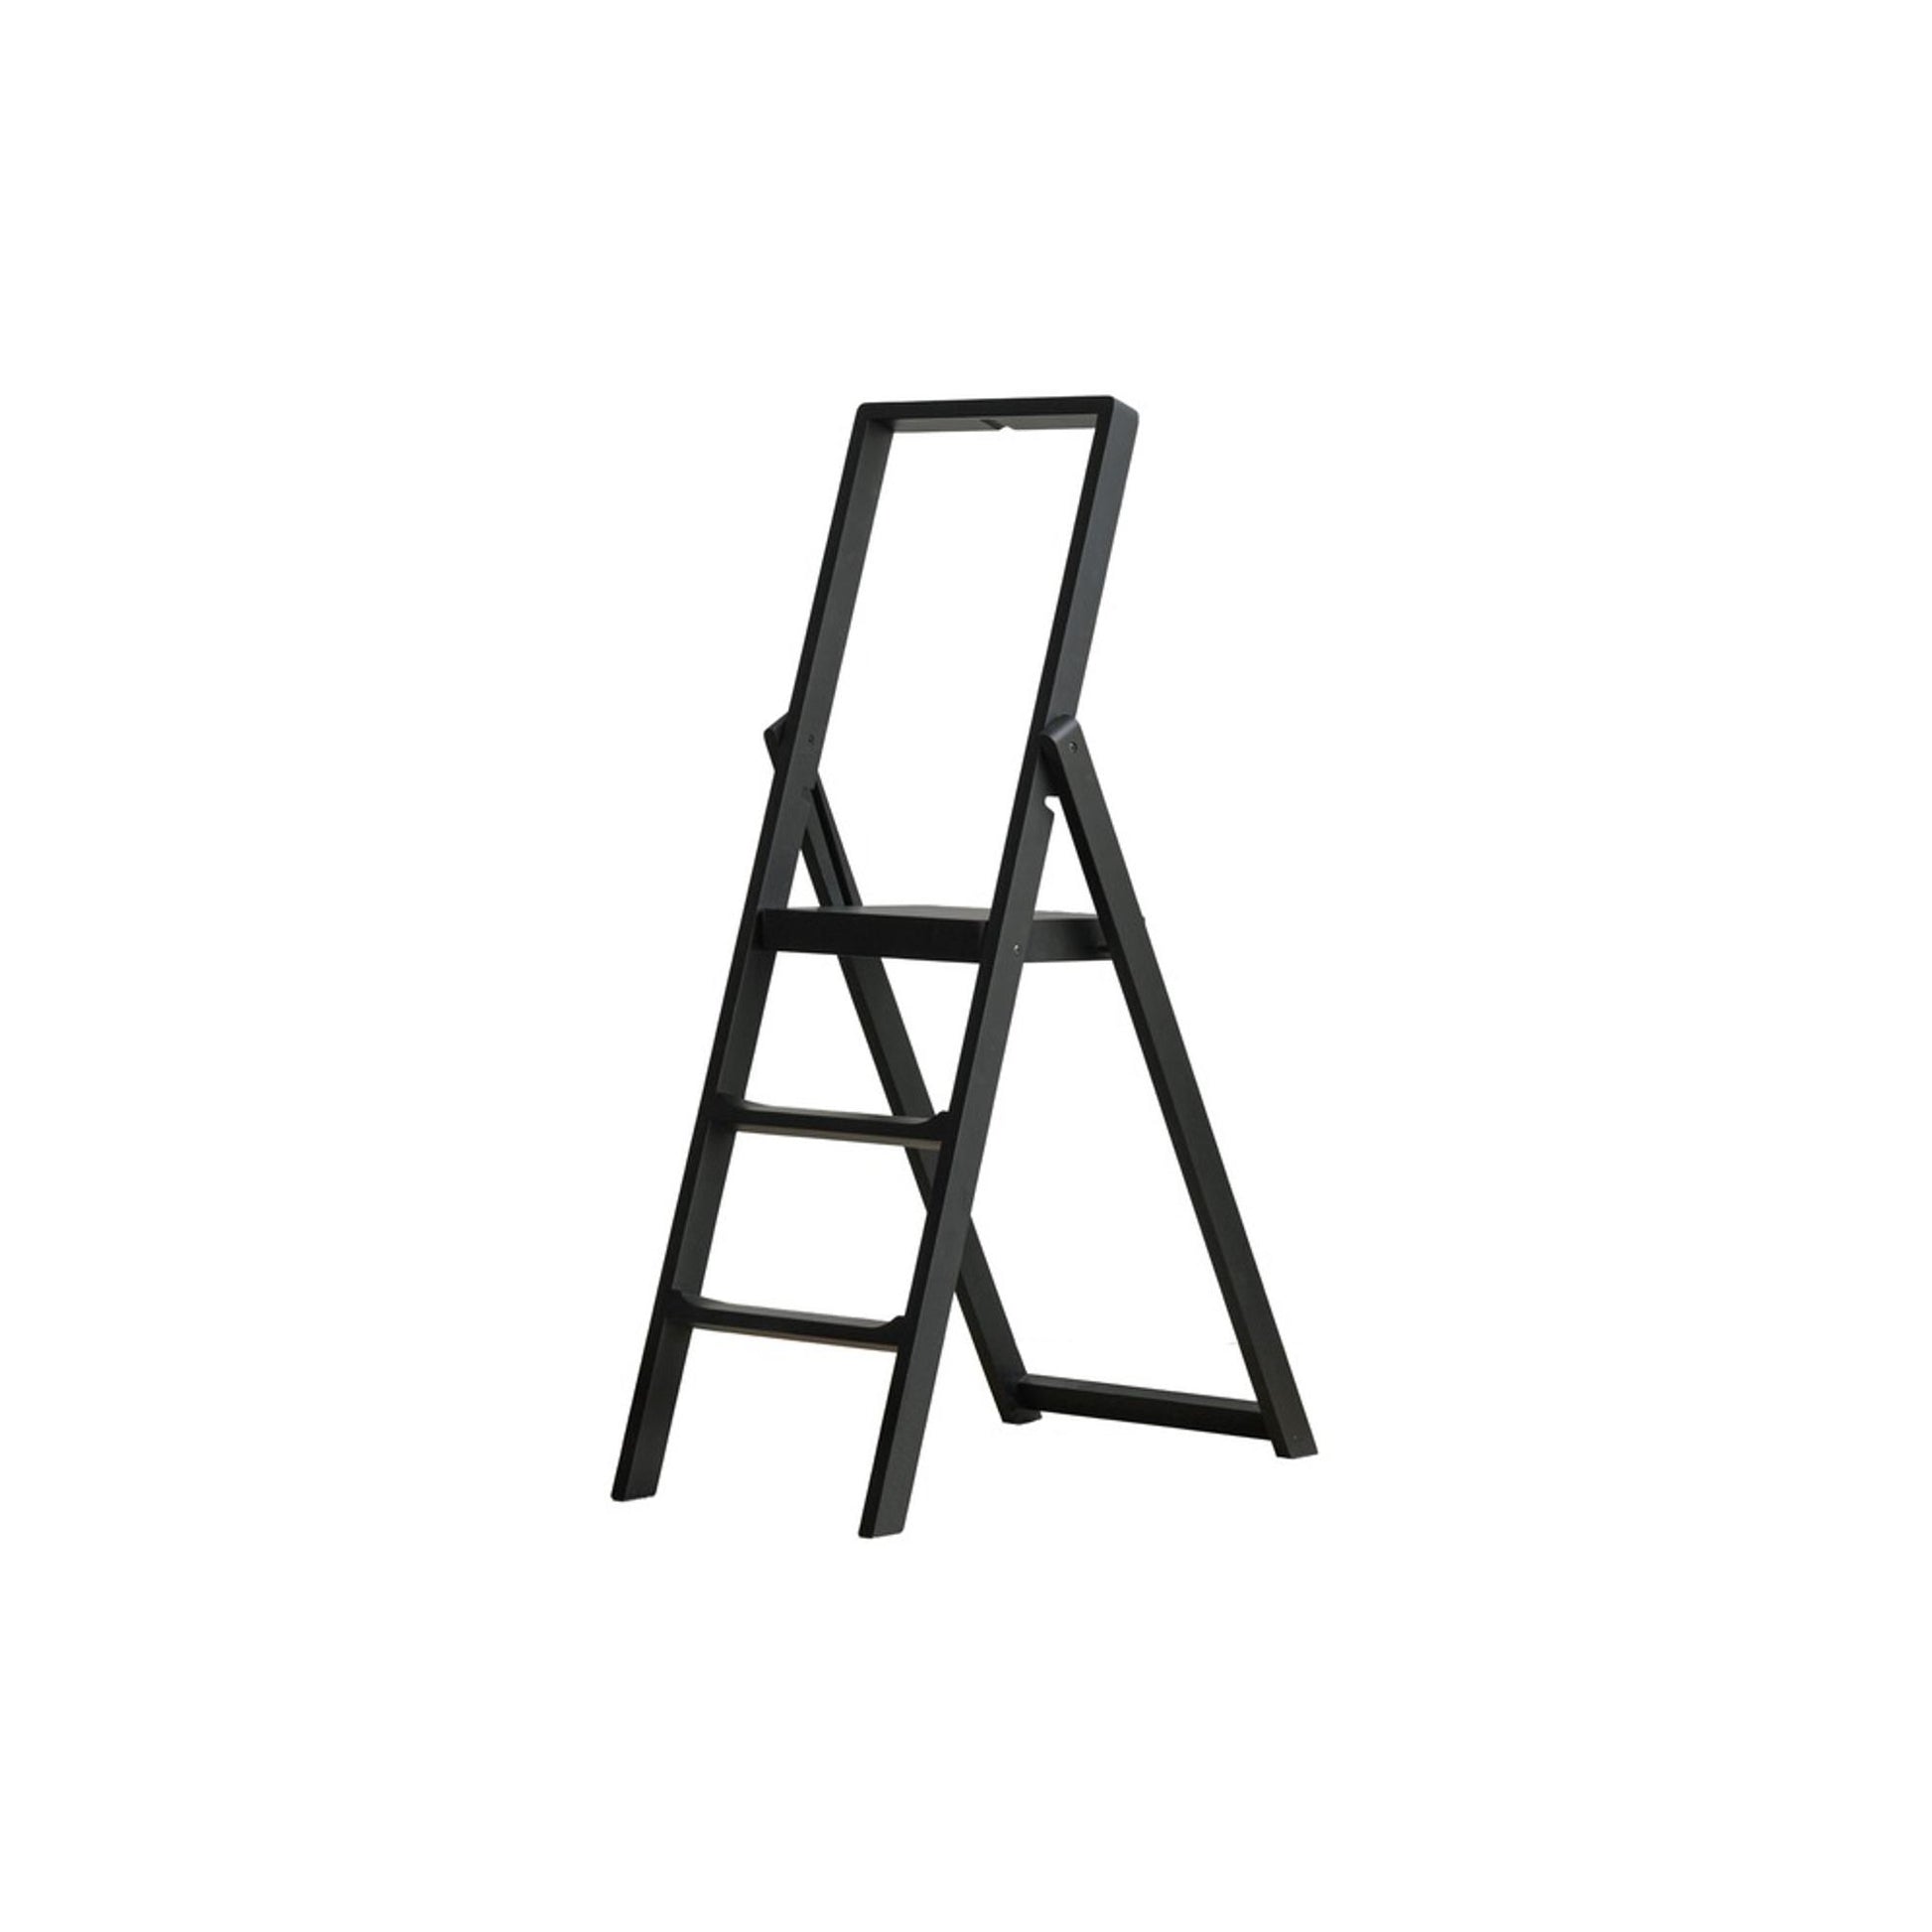 Step Ladder by Design House Stockholm #Black